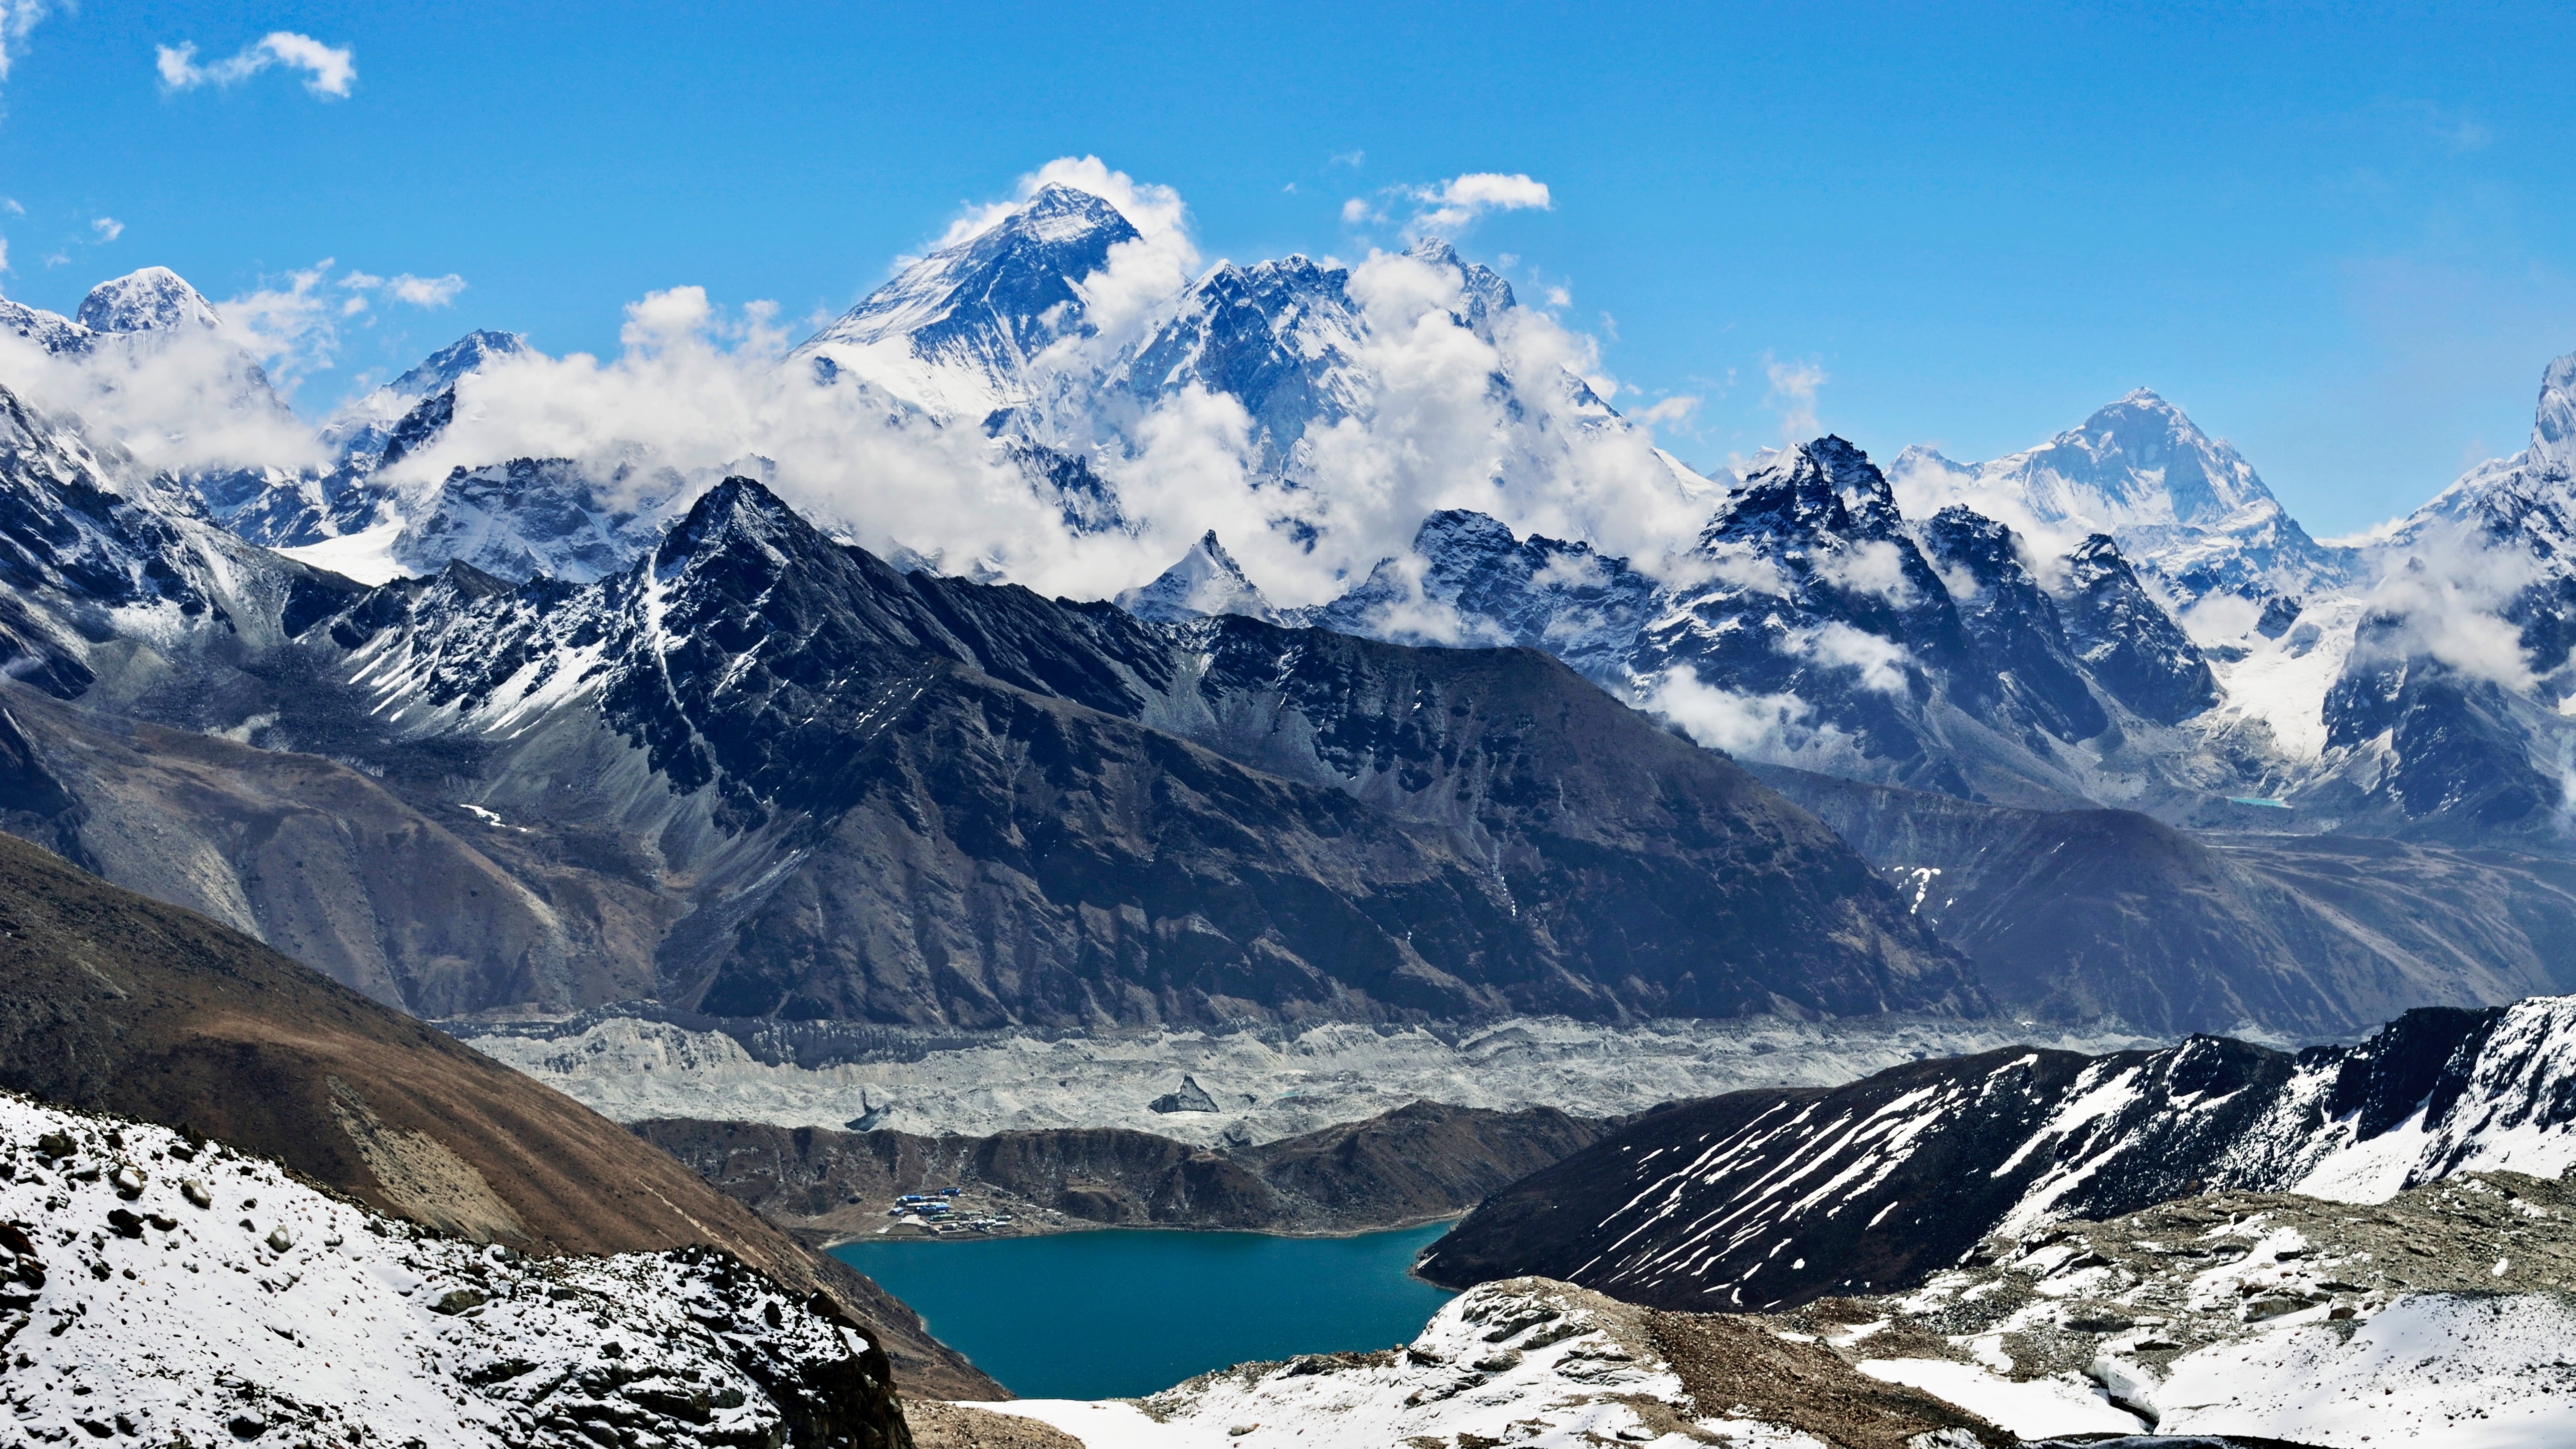 Tényleg a Mount Everest a világ legmagasabb hegycsúcsa?